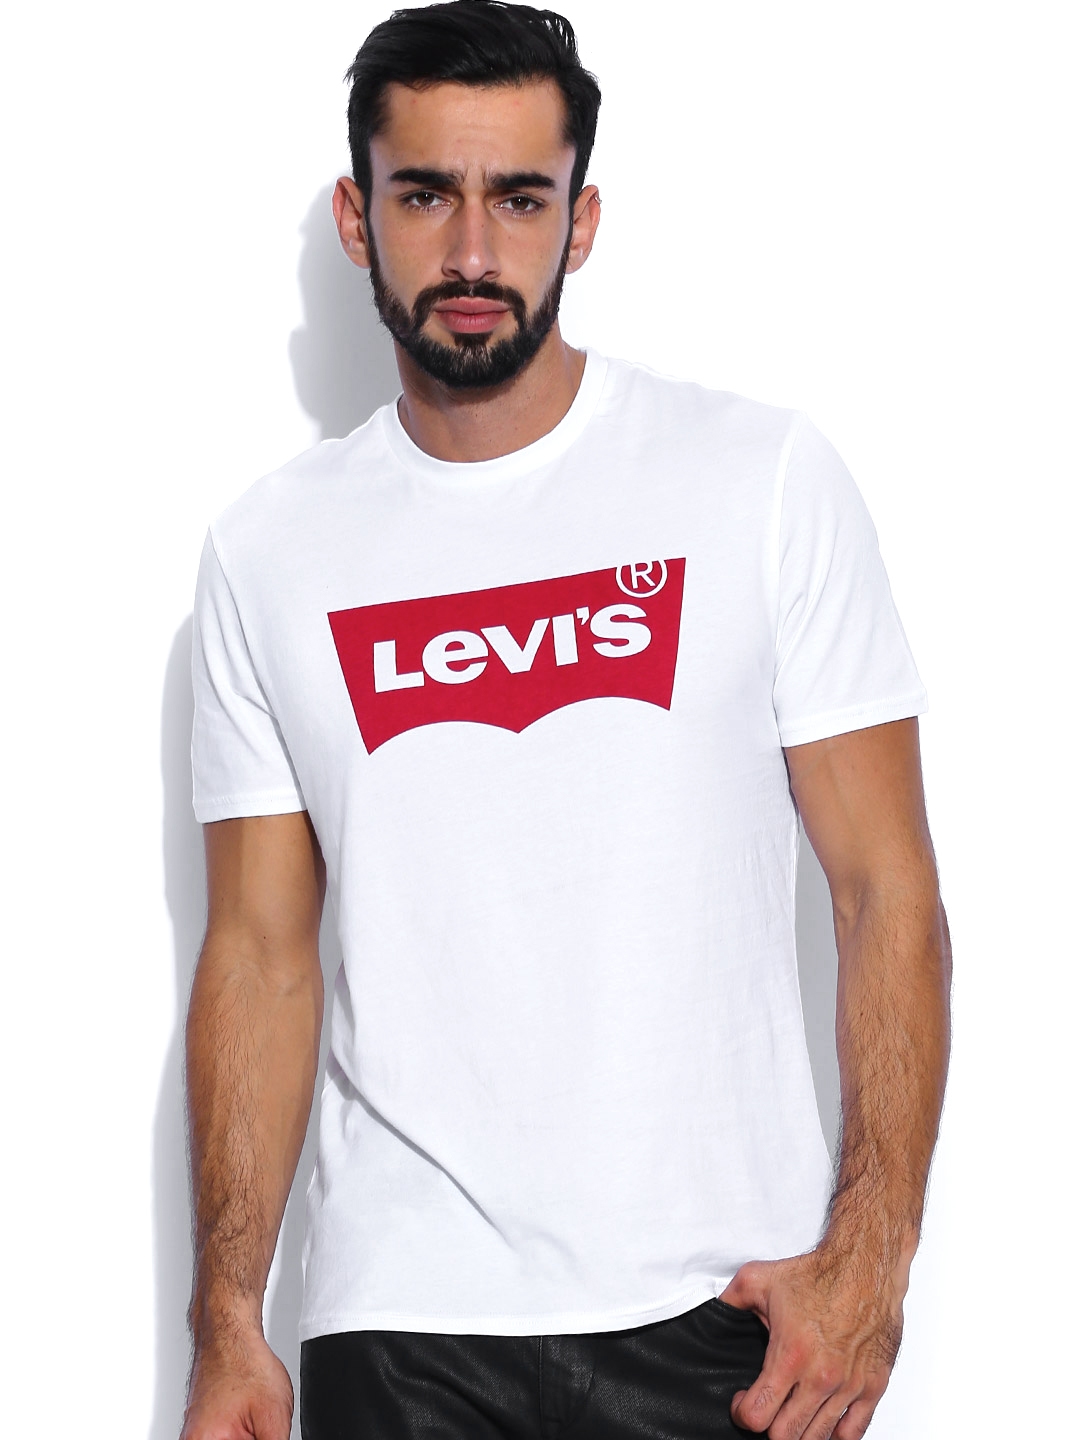 levis shirt myntra